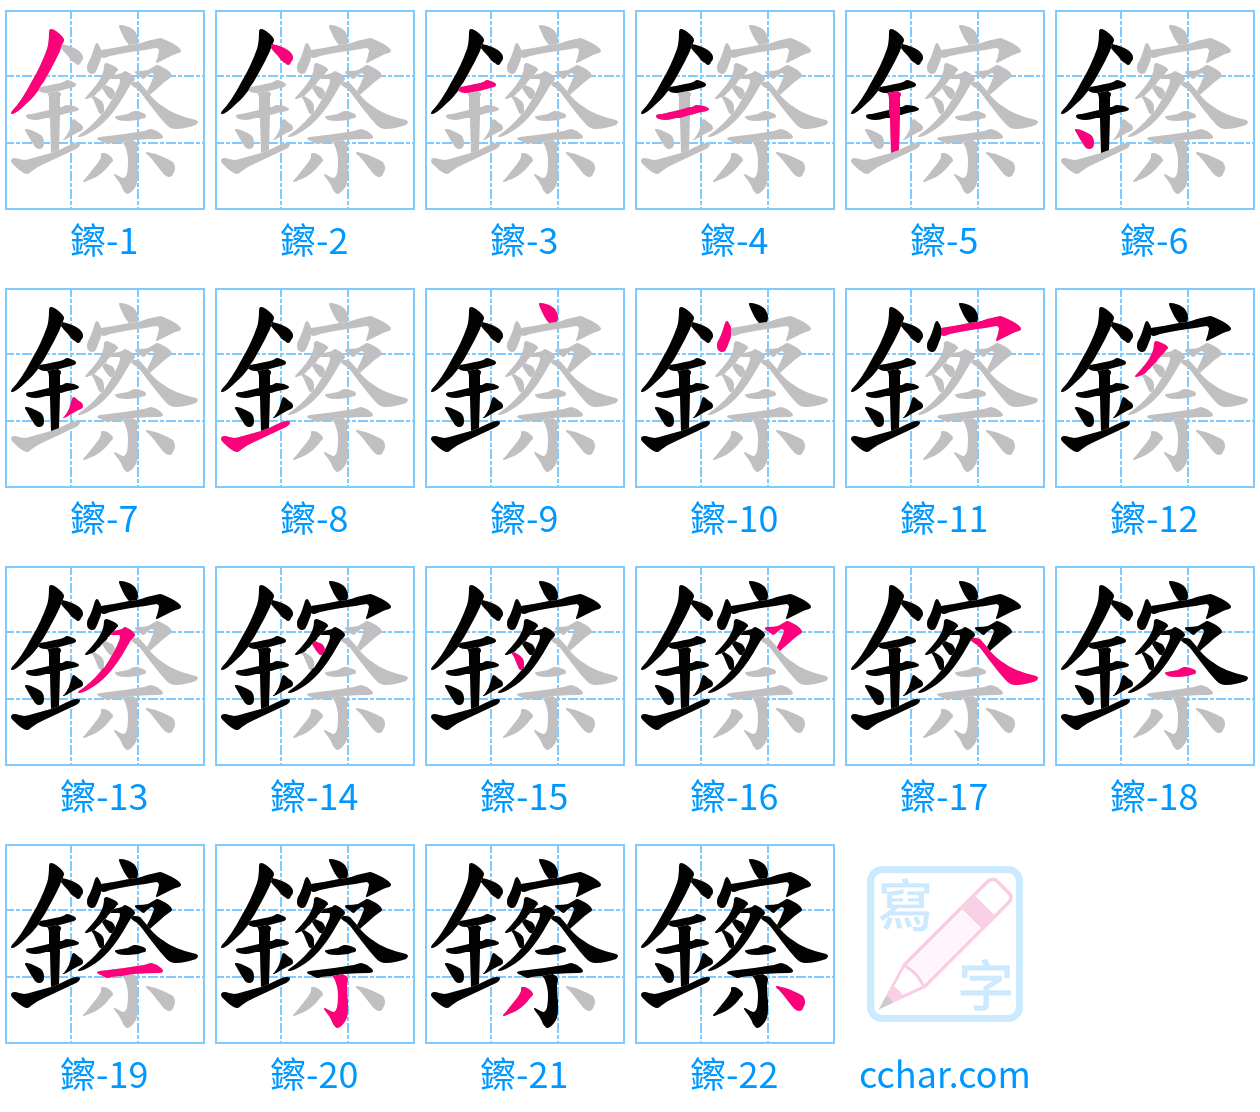 鑔 stroke order step-by-step diagram